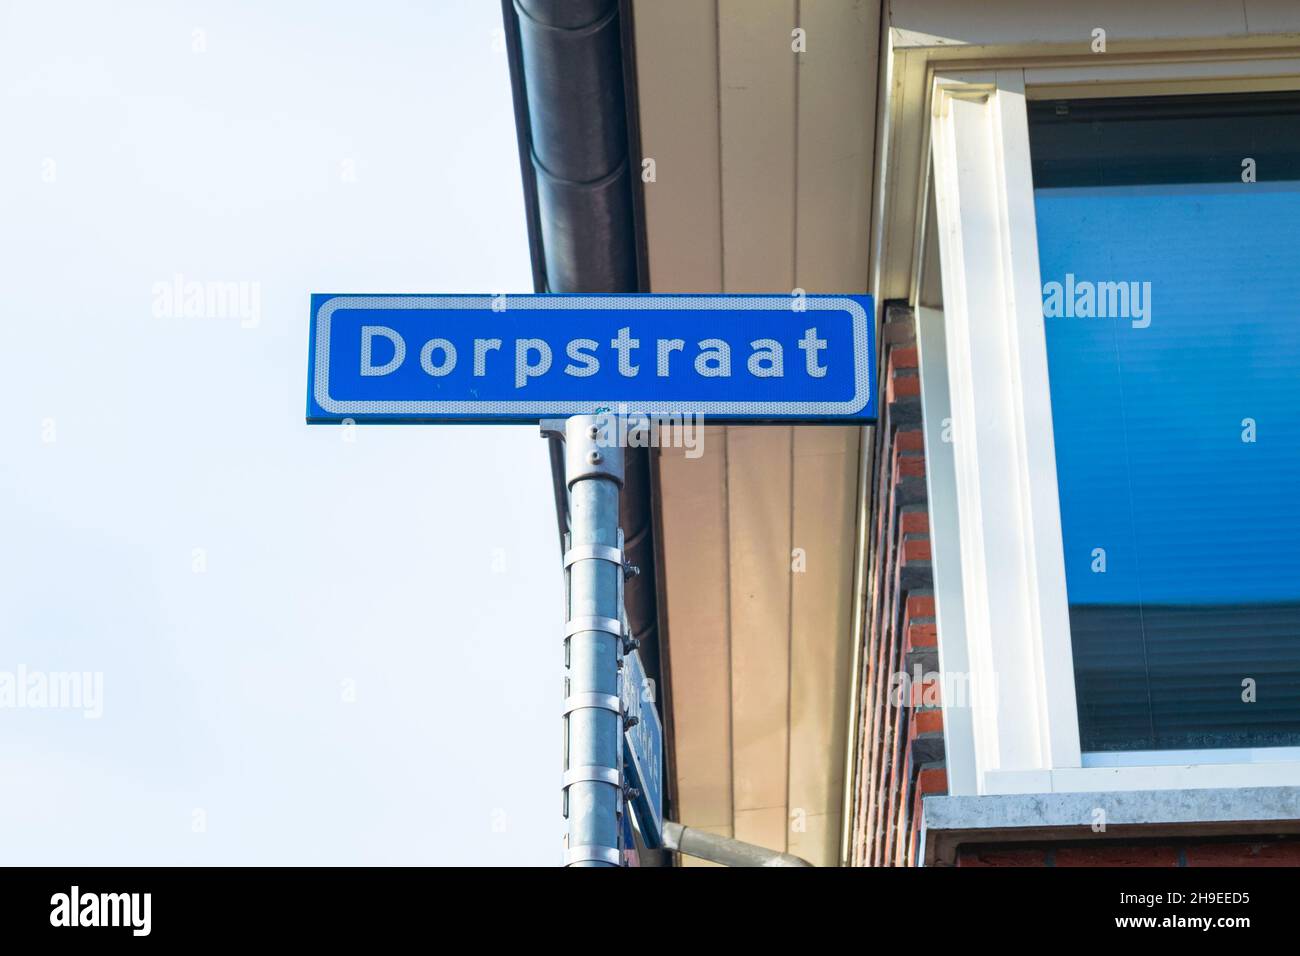 Il nome della strada e' 'Dorpstraat' (dorpstraat significa Village Street in olandese). Un nome di strada che si trova in quasi ogni villaggio olandese. Foto Stock